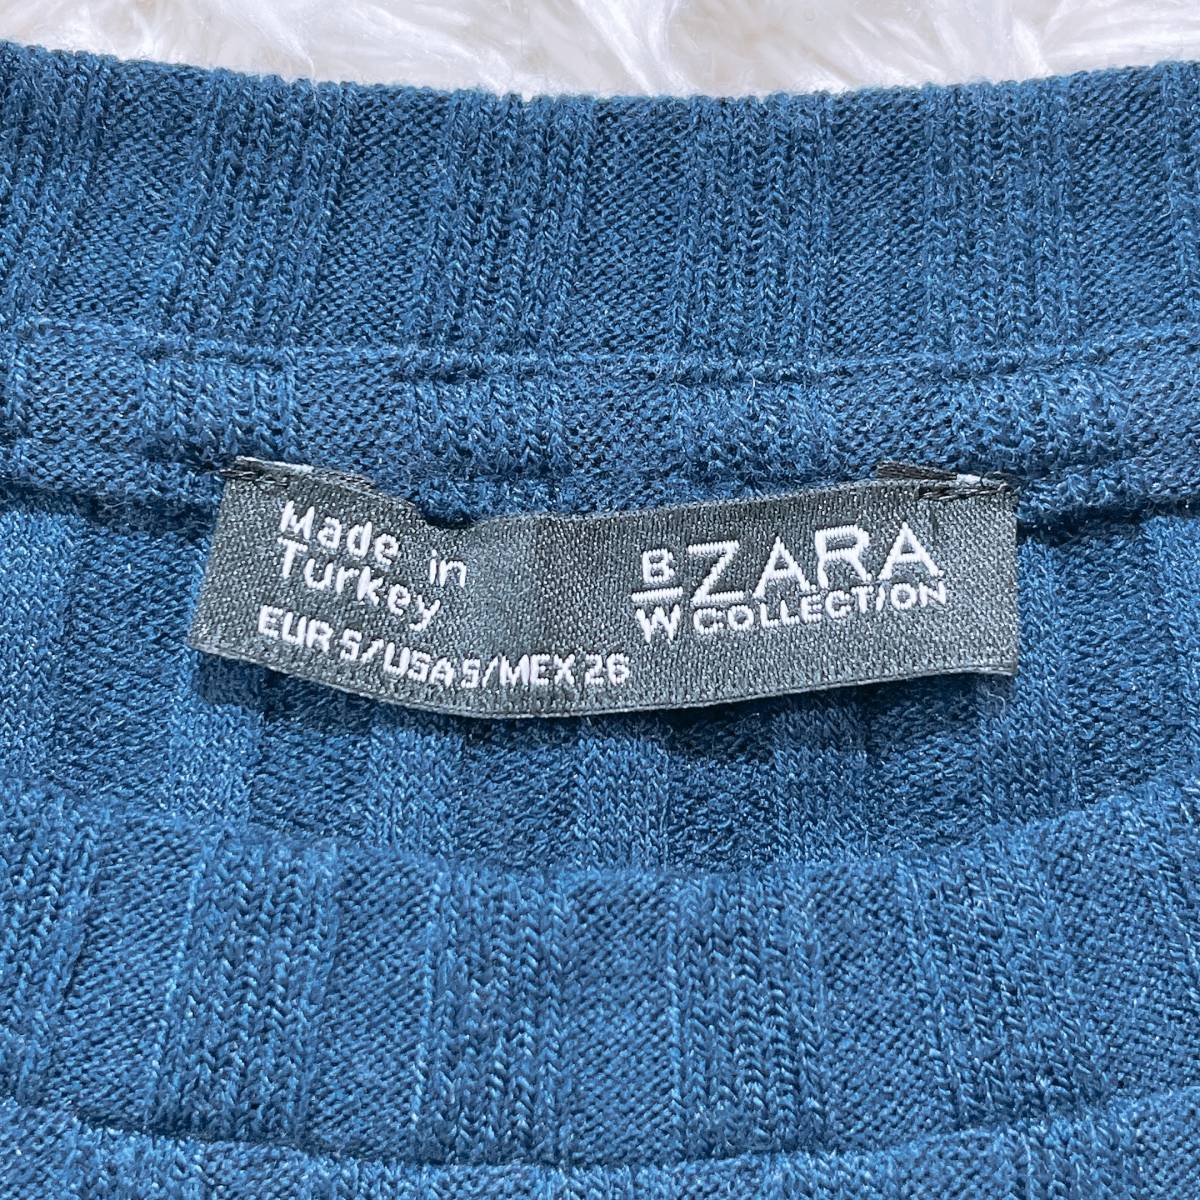 【20982】 良品 ZARA ザラ Tシャツ ネイビー 紺 S 半袖 ストレッチ 伸縮性 インナー シンプル 無地 レディース 女性用